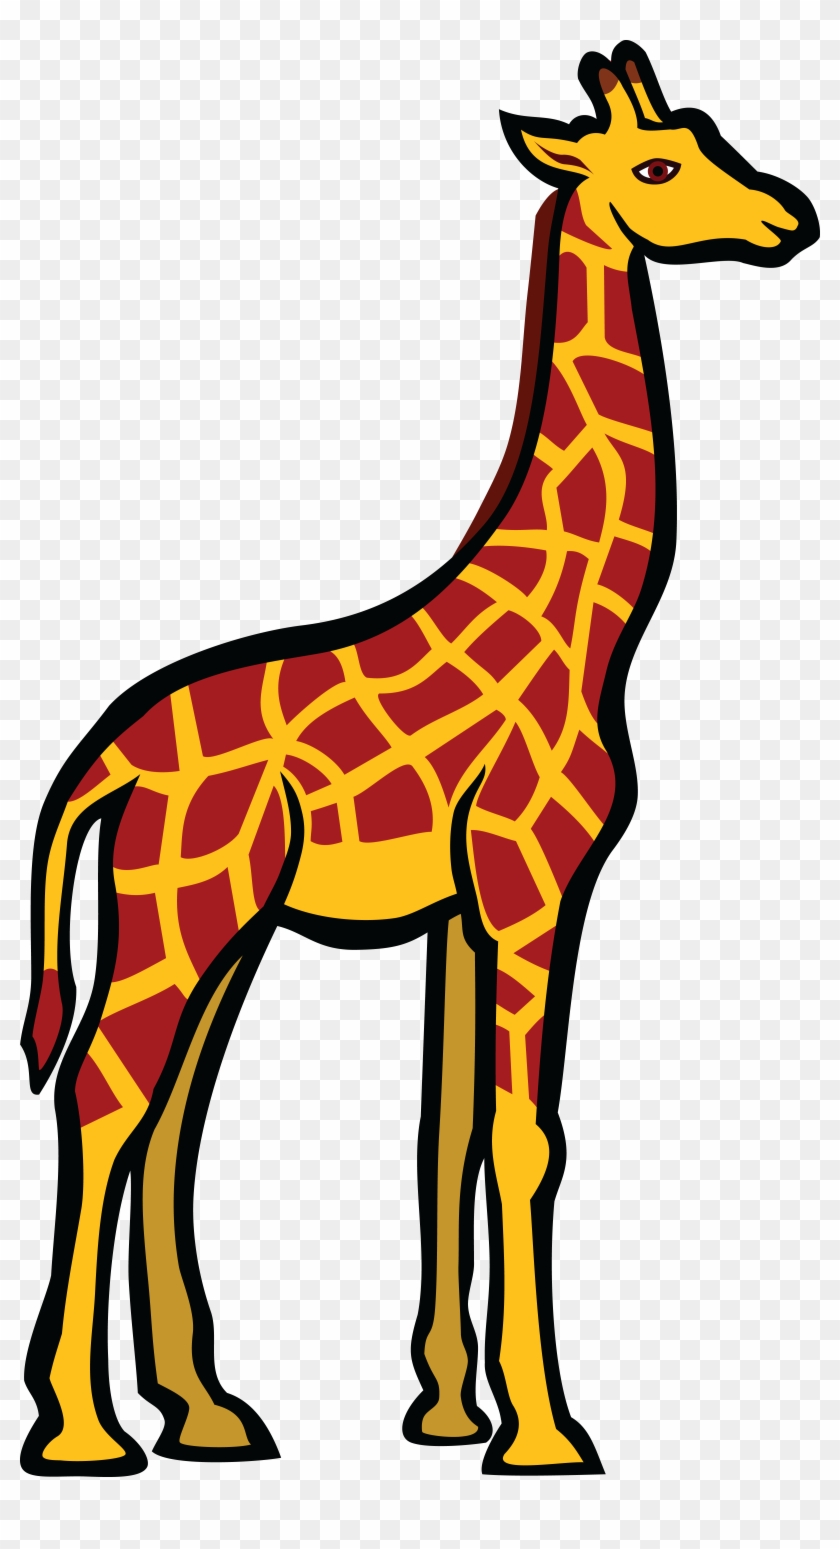 Free Clipart Of A Giraffe - Giraffe Clipart #120632